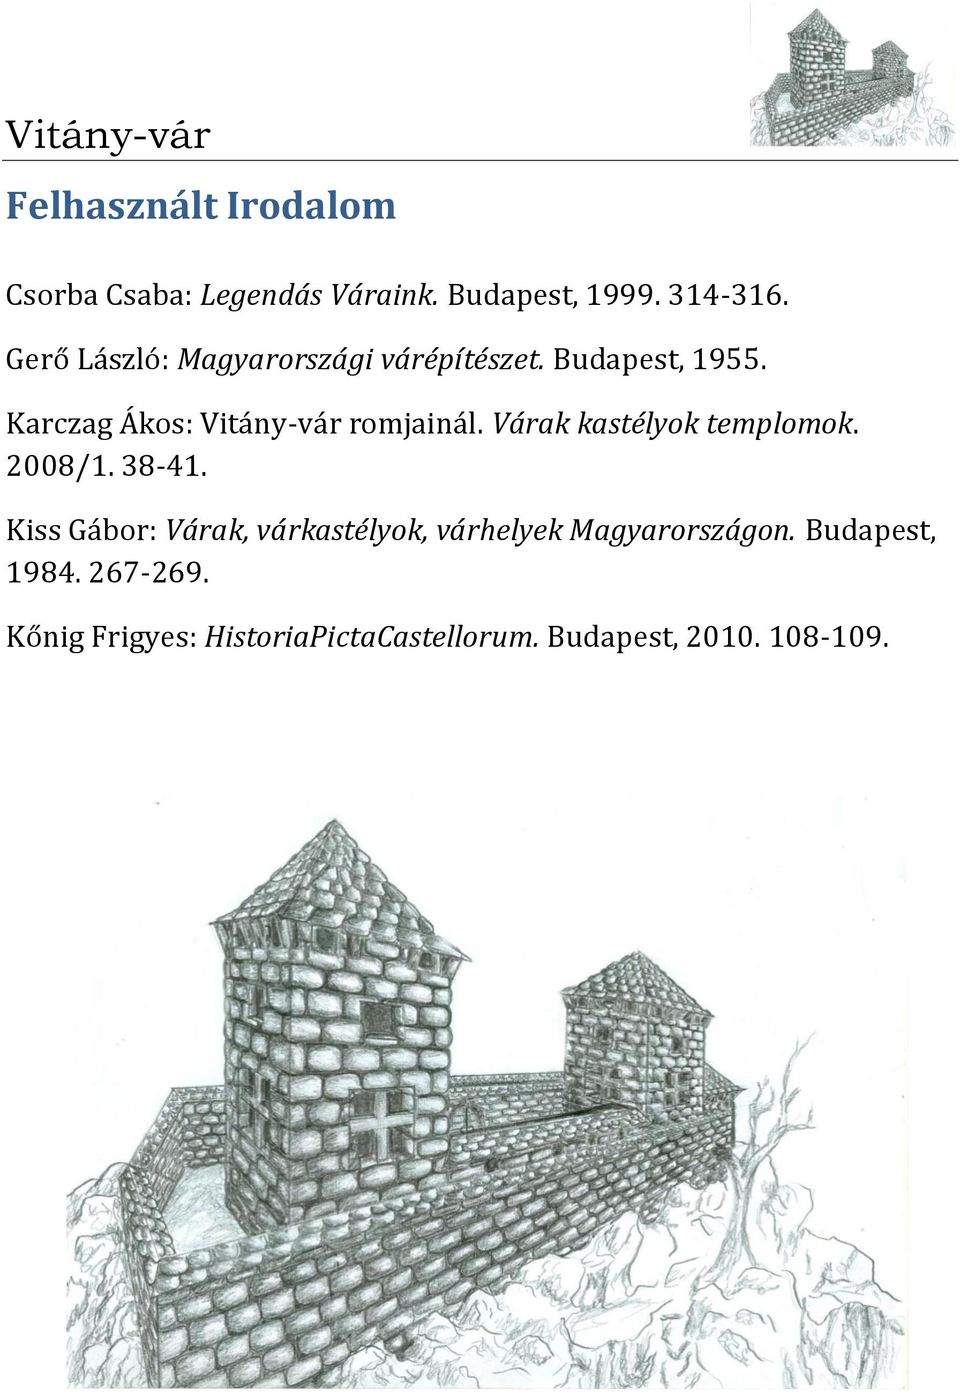 Karczag Ákos: Vitány-vár romjainál. Várak kastélyok templomok. 2008/1. 38-41.